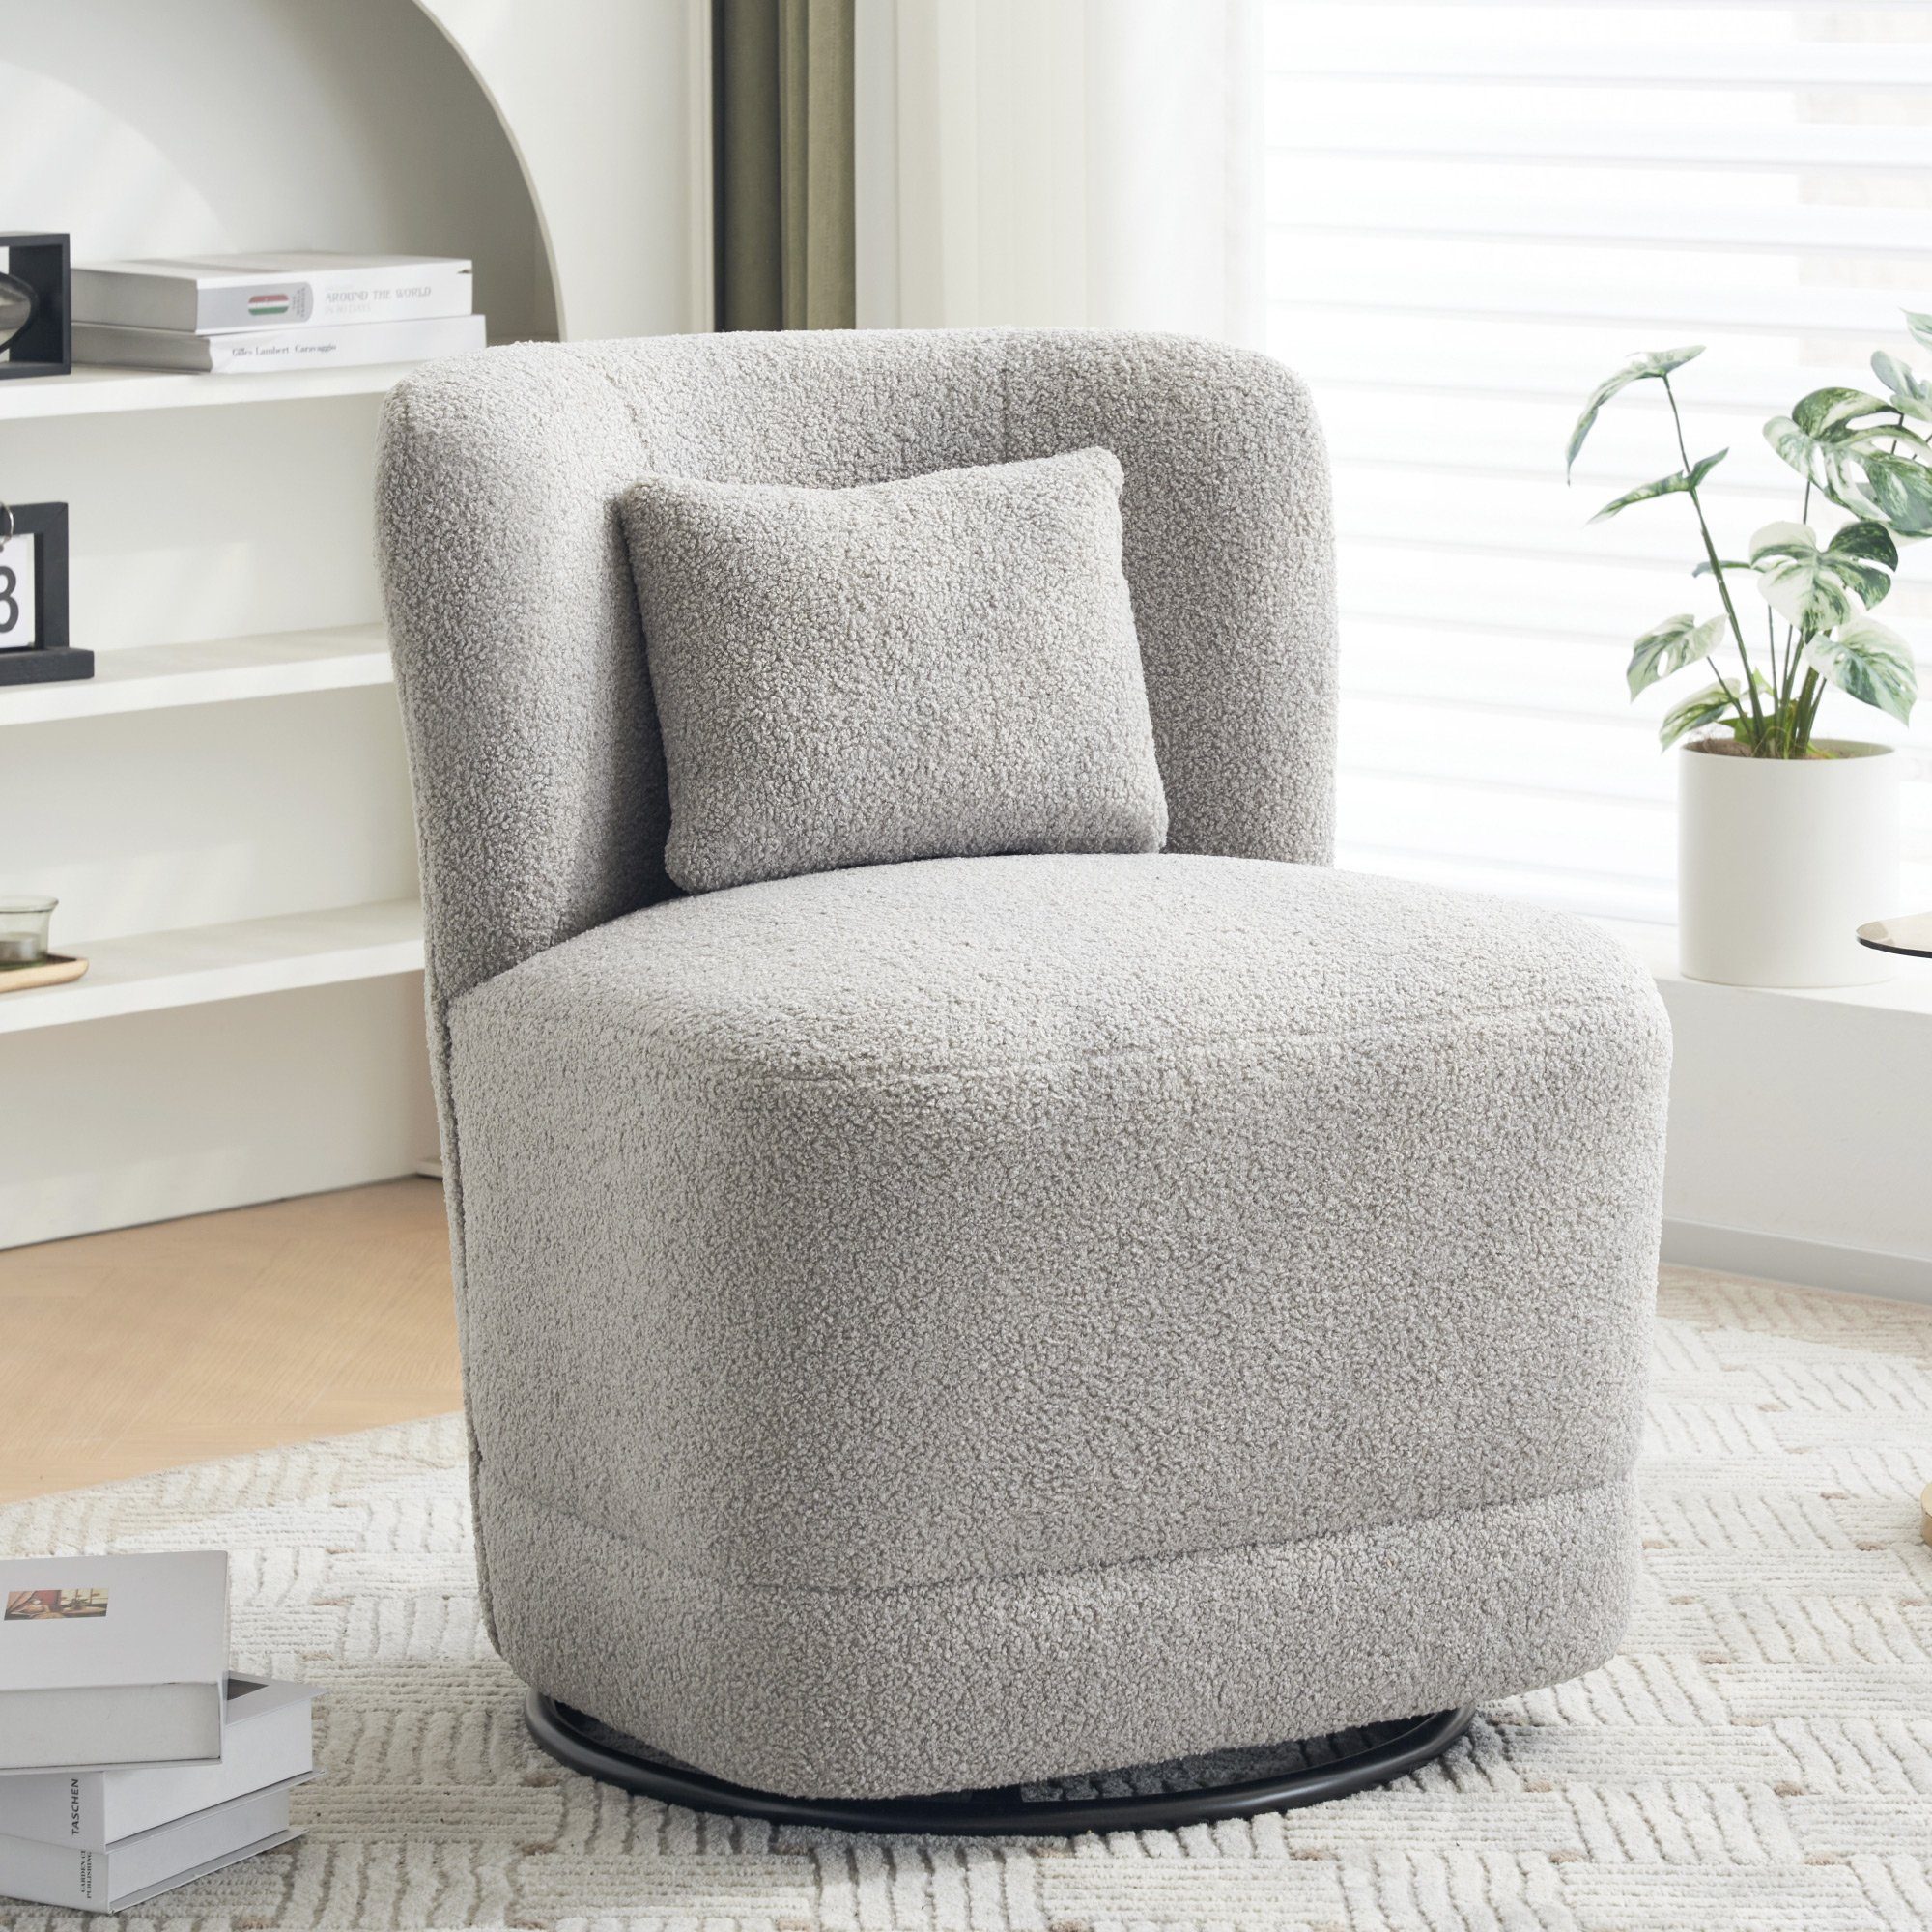 KLAM HOME Relaxsessel Ruhesessel Einzelsessel mit Lendenkissen (für Wohn-, Schlaf- und Arbeitszimmer, Freizeitstuhl), 360° drehbar Drehsessel bis 150kg belastbar grau | grau | grau | Sessel